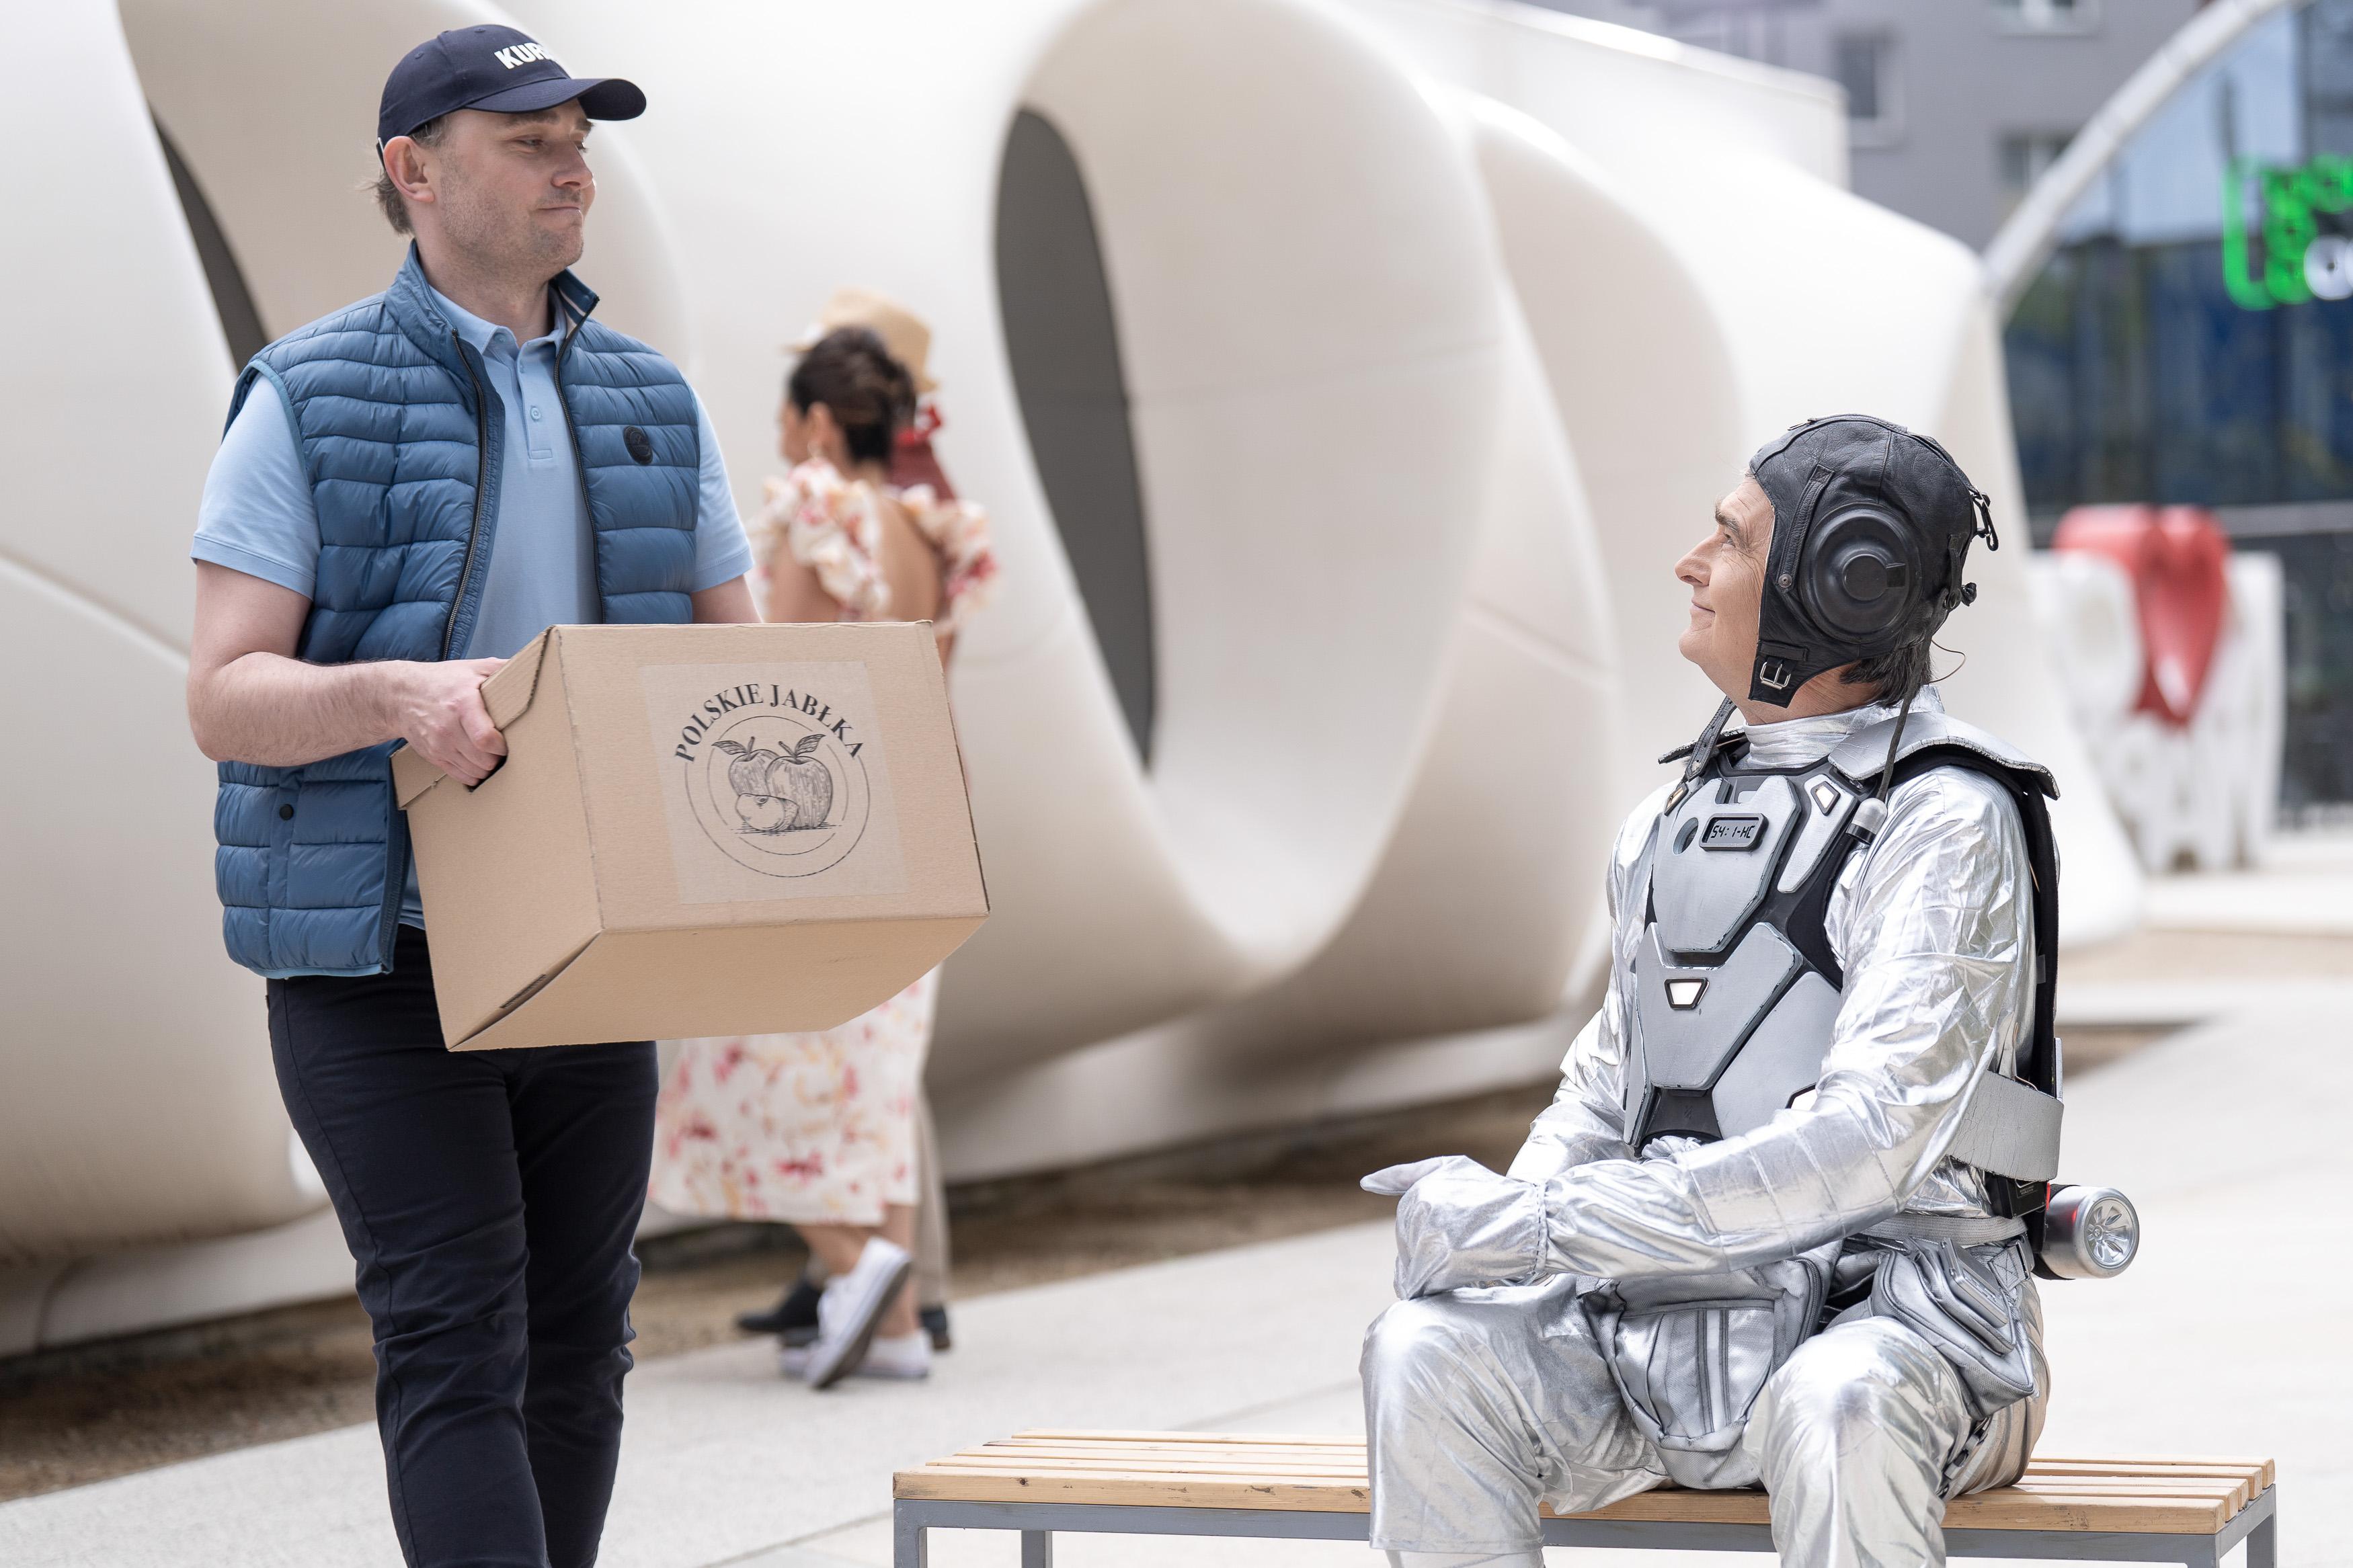 Uśmiechnięty mężczyzna w stroju astronauty siedzi na ławce i patrzy na mężczyznę, który trzyma kartonowe pudło z napisem "polskie jabłka"